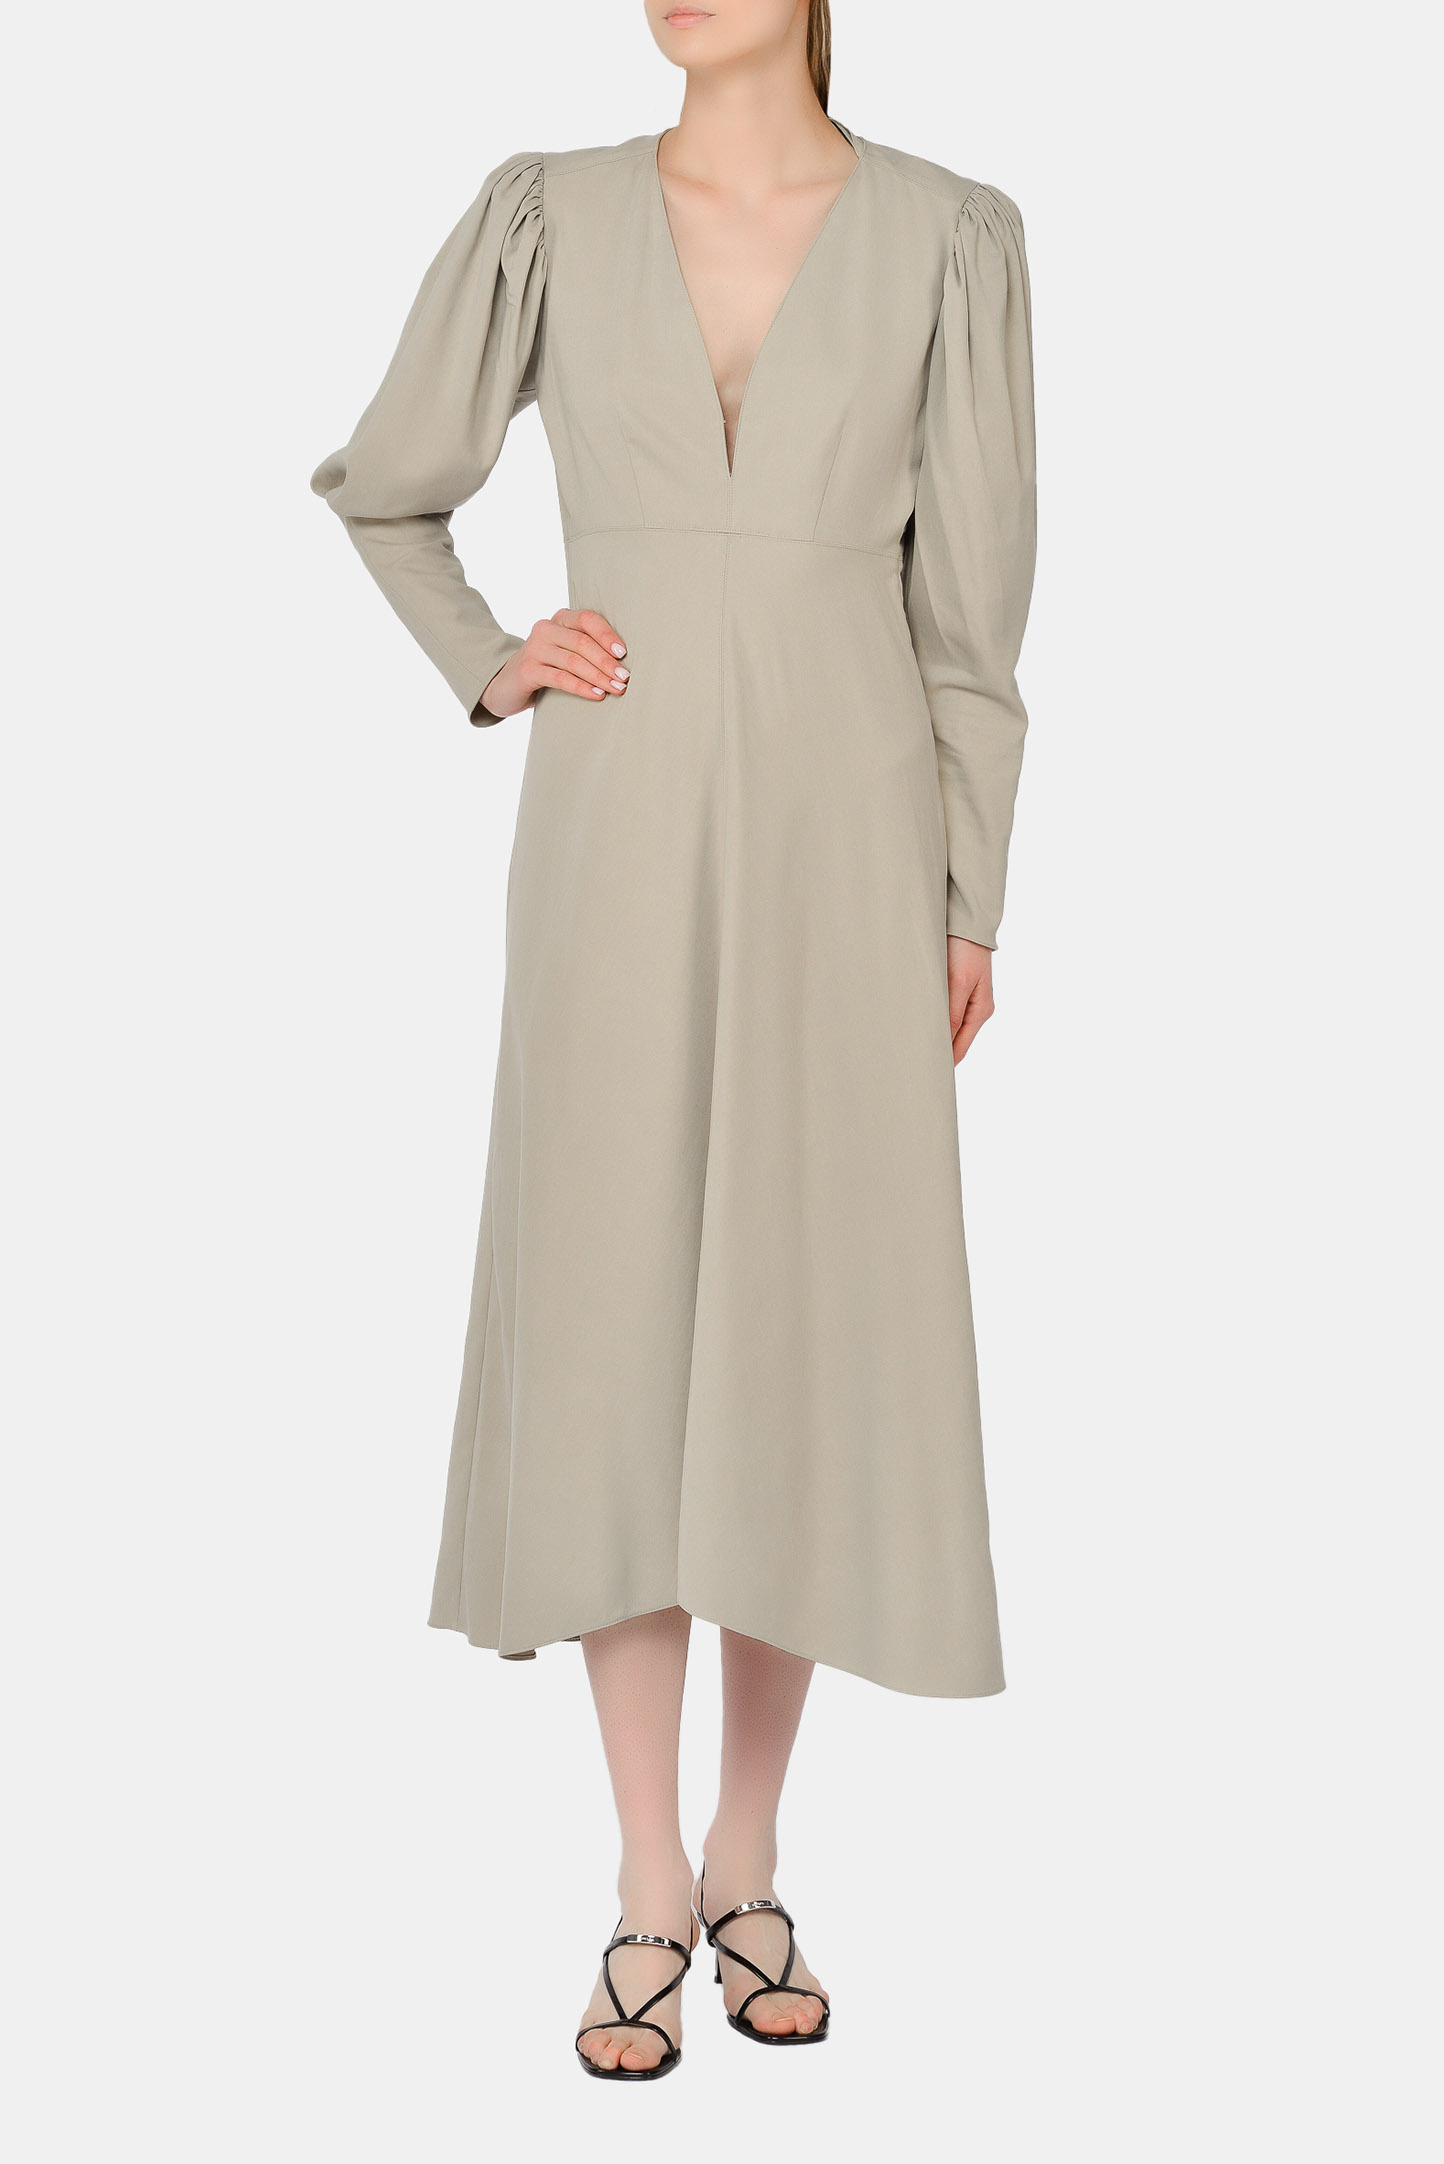 Платье ISABEL MARANT RO1905-21P012I, цвет: Молочный, Женский